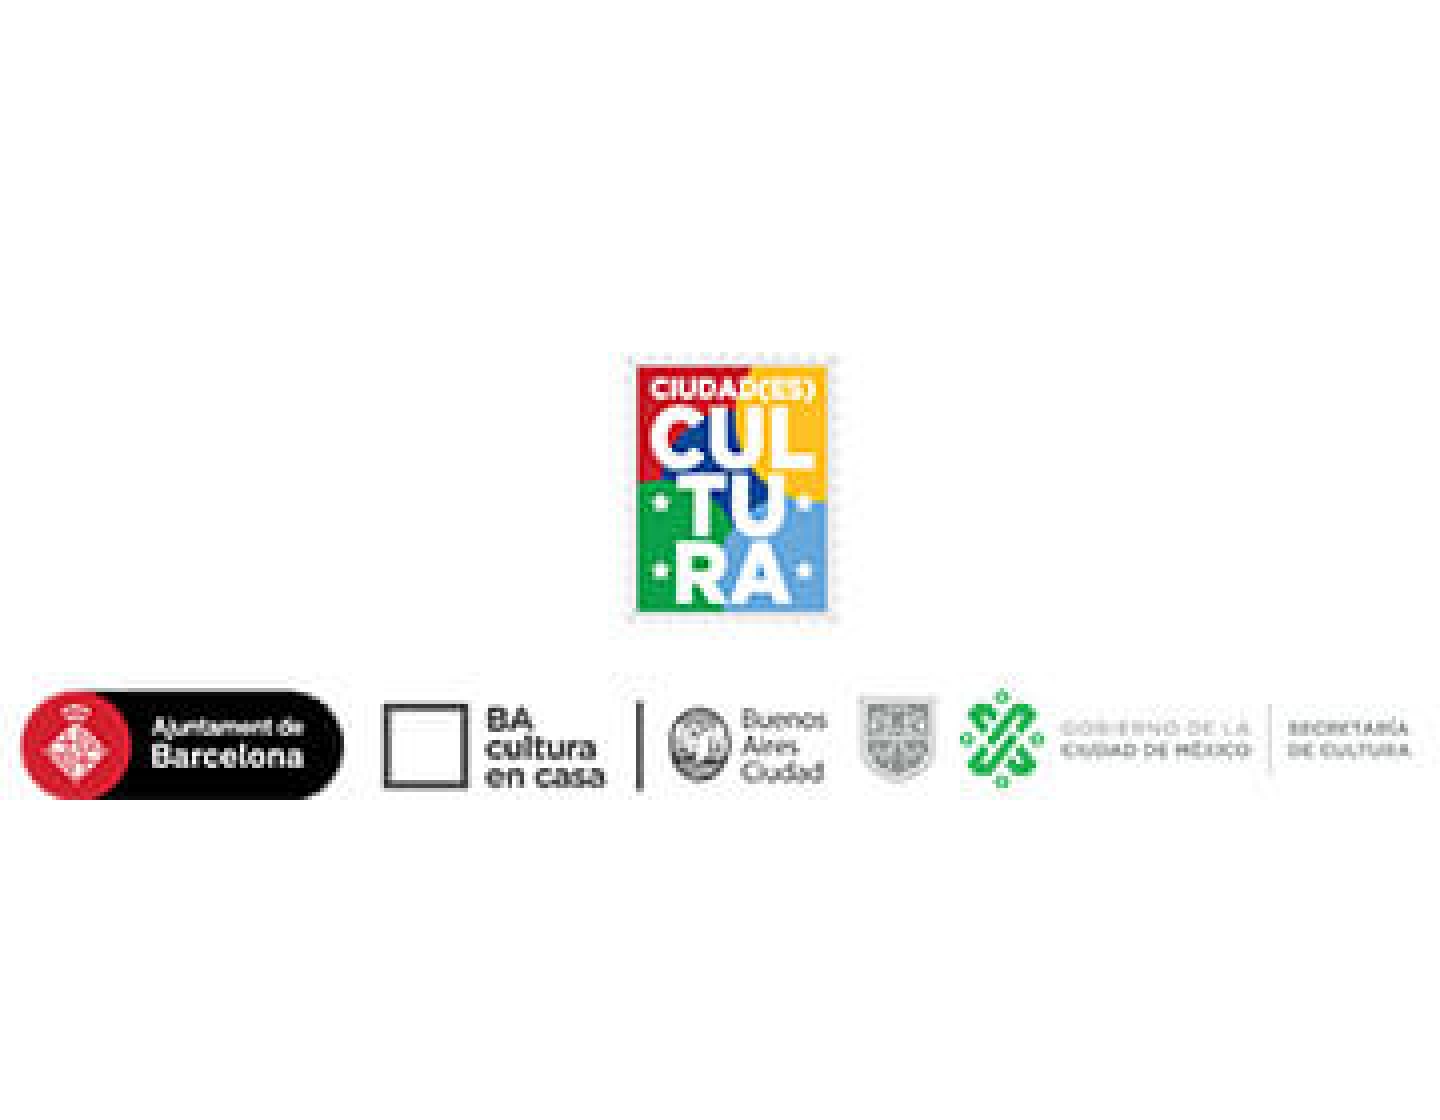 Ciudades iberoamericanas amplían oferta cultural en plataformas web